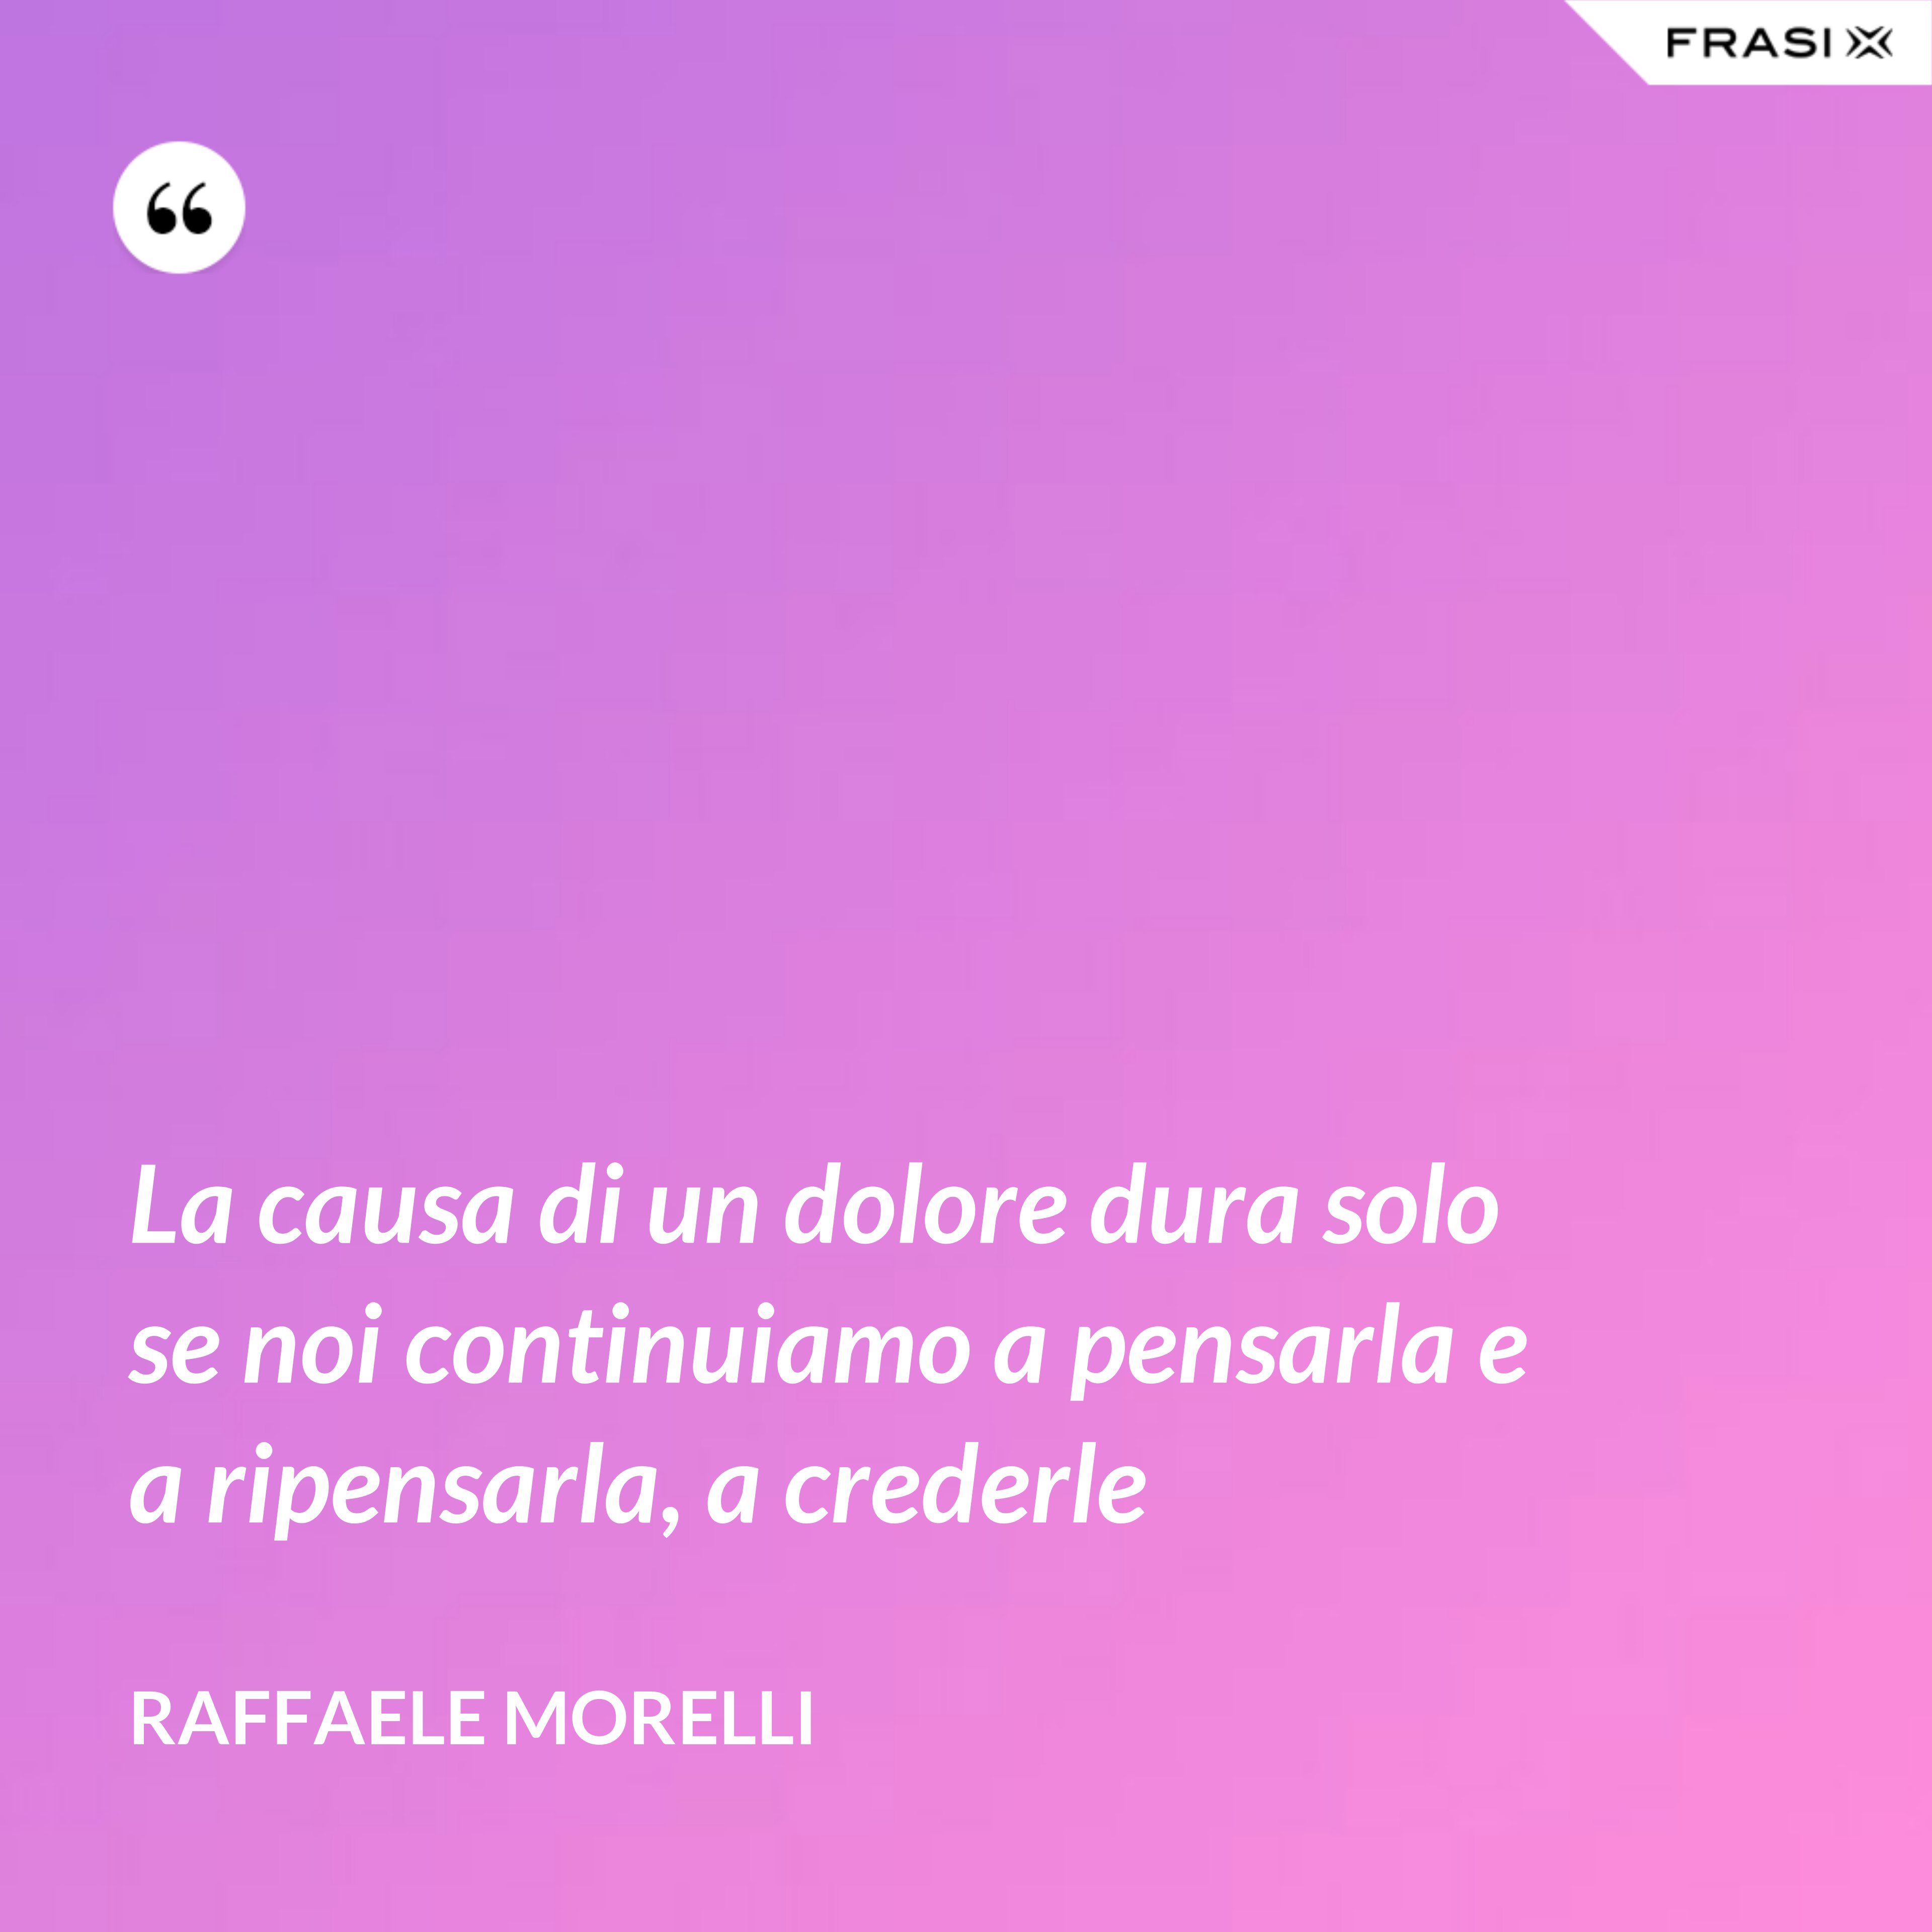 La causa di un dolore dura solo se noi continuiamo a pensarla e a ripensarla, a crederle - Raffaele Morelli